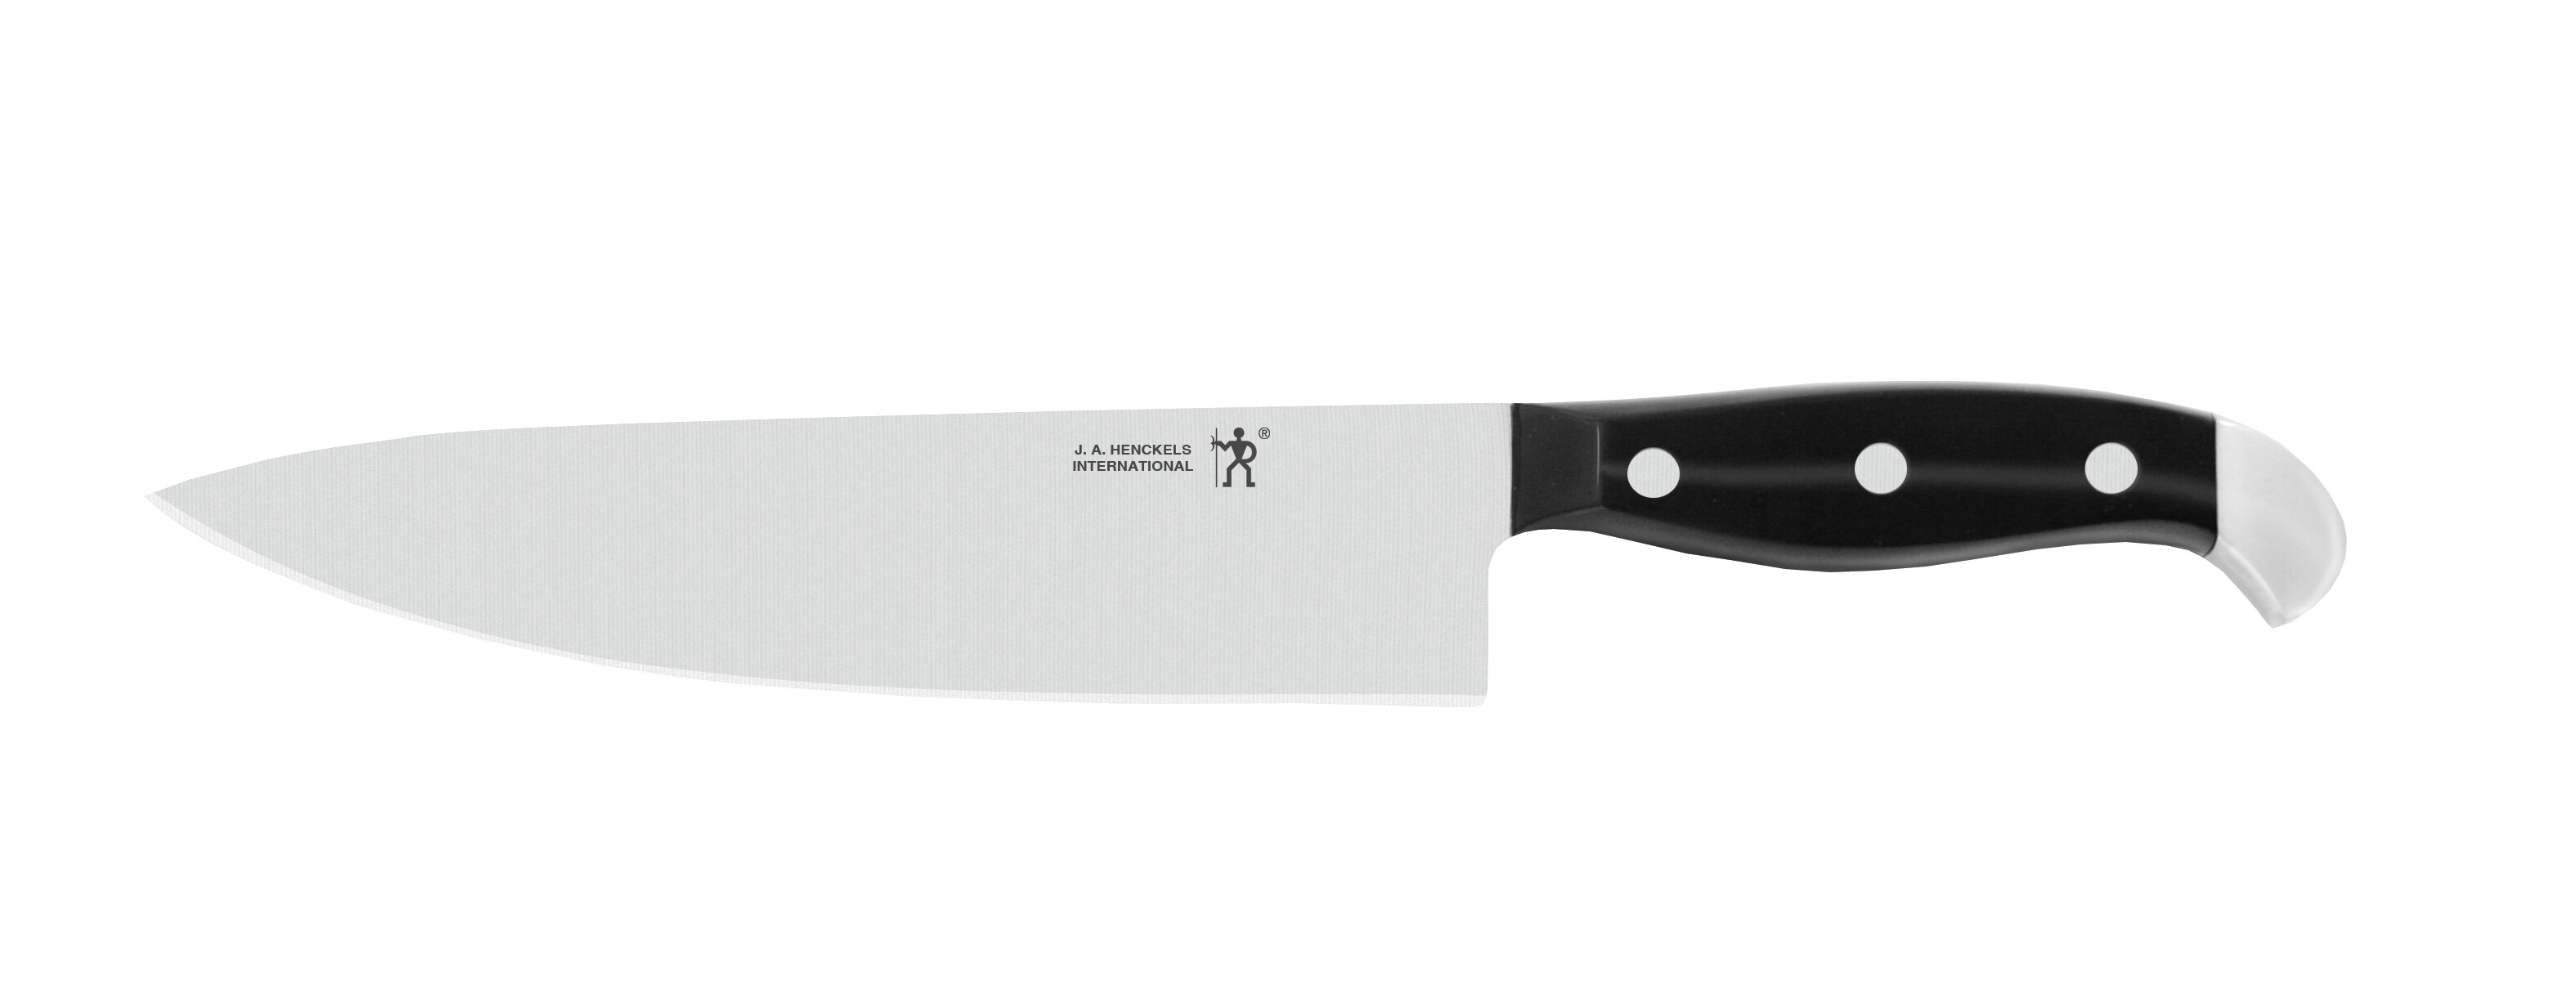 https://assets.wfcdn.com/im/74318826/compr-r85/3135/31350077/henckels-statement-8-inch-chefs-knife.jpg